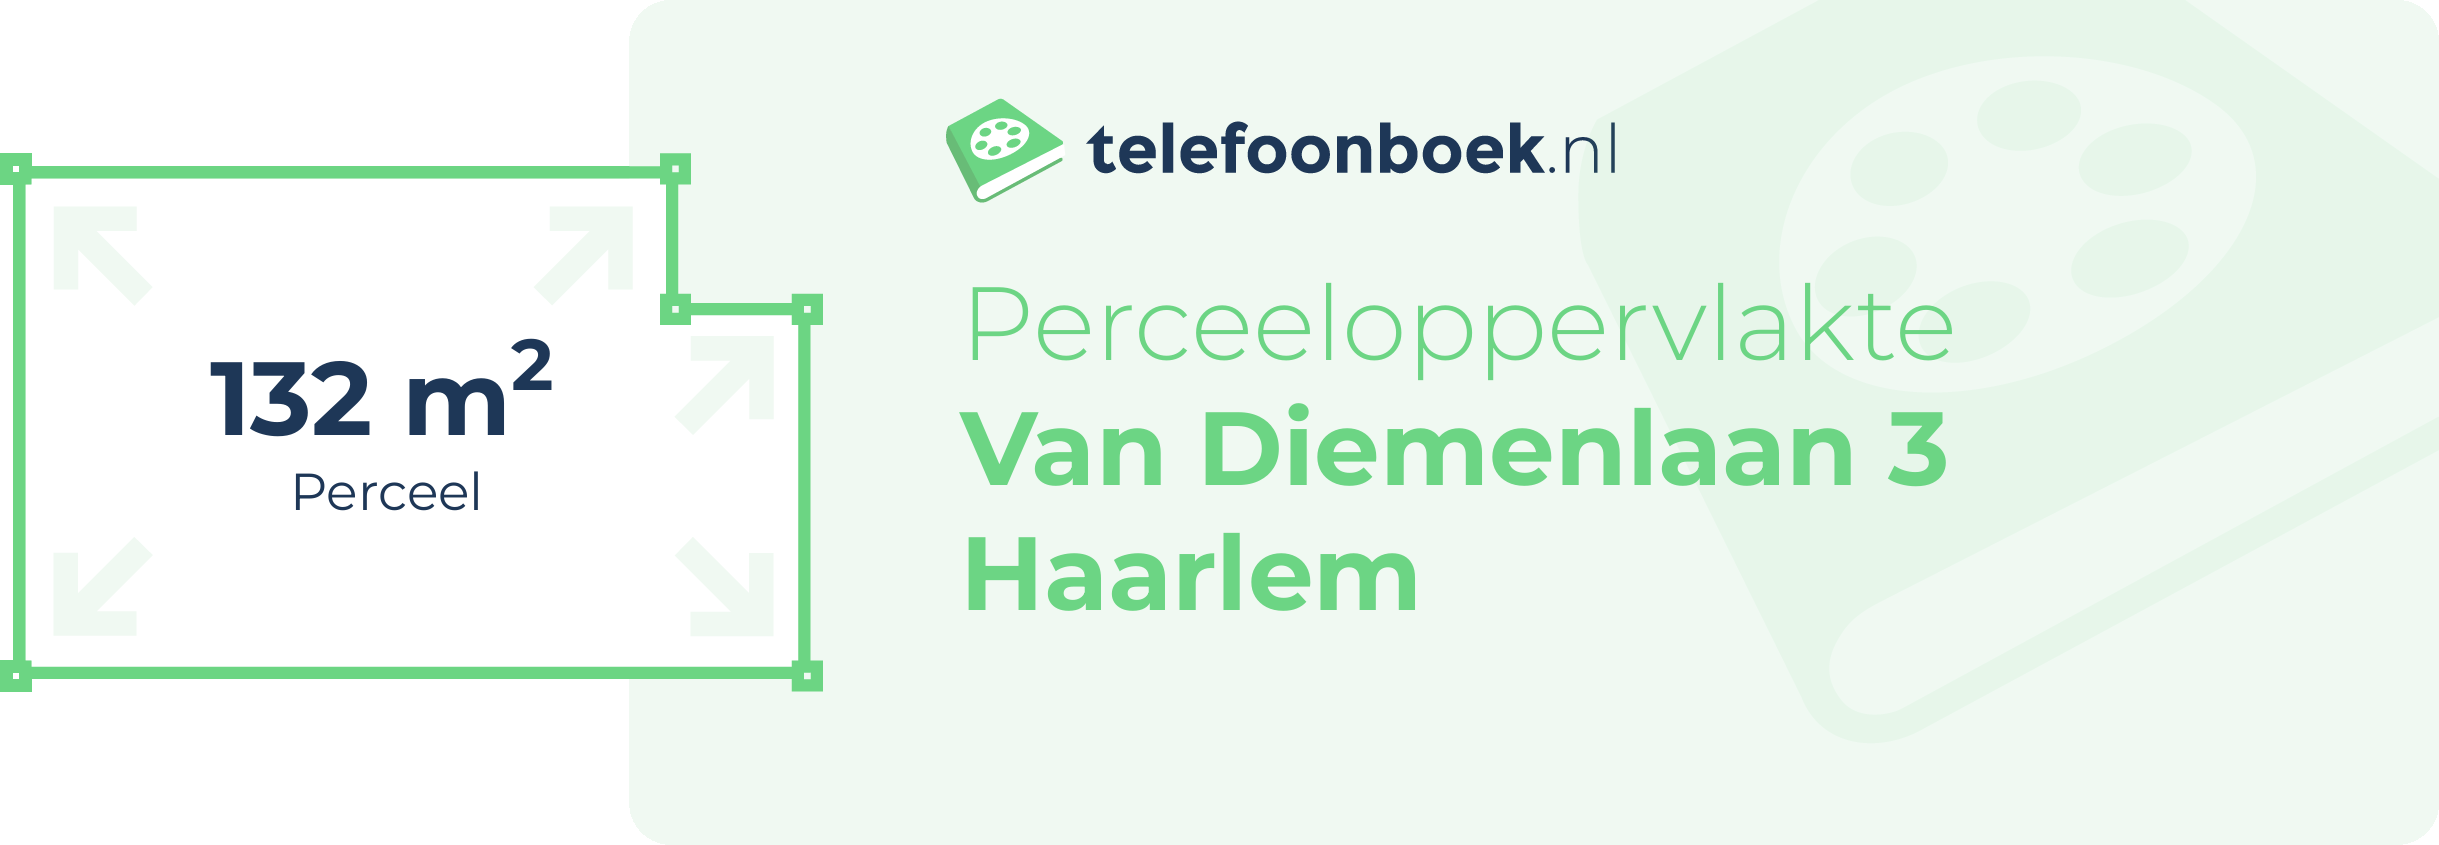 Perceeloppervlakte Van Diemenlaan 3 Haarlem